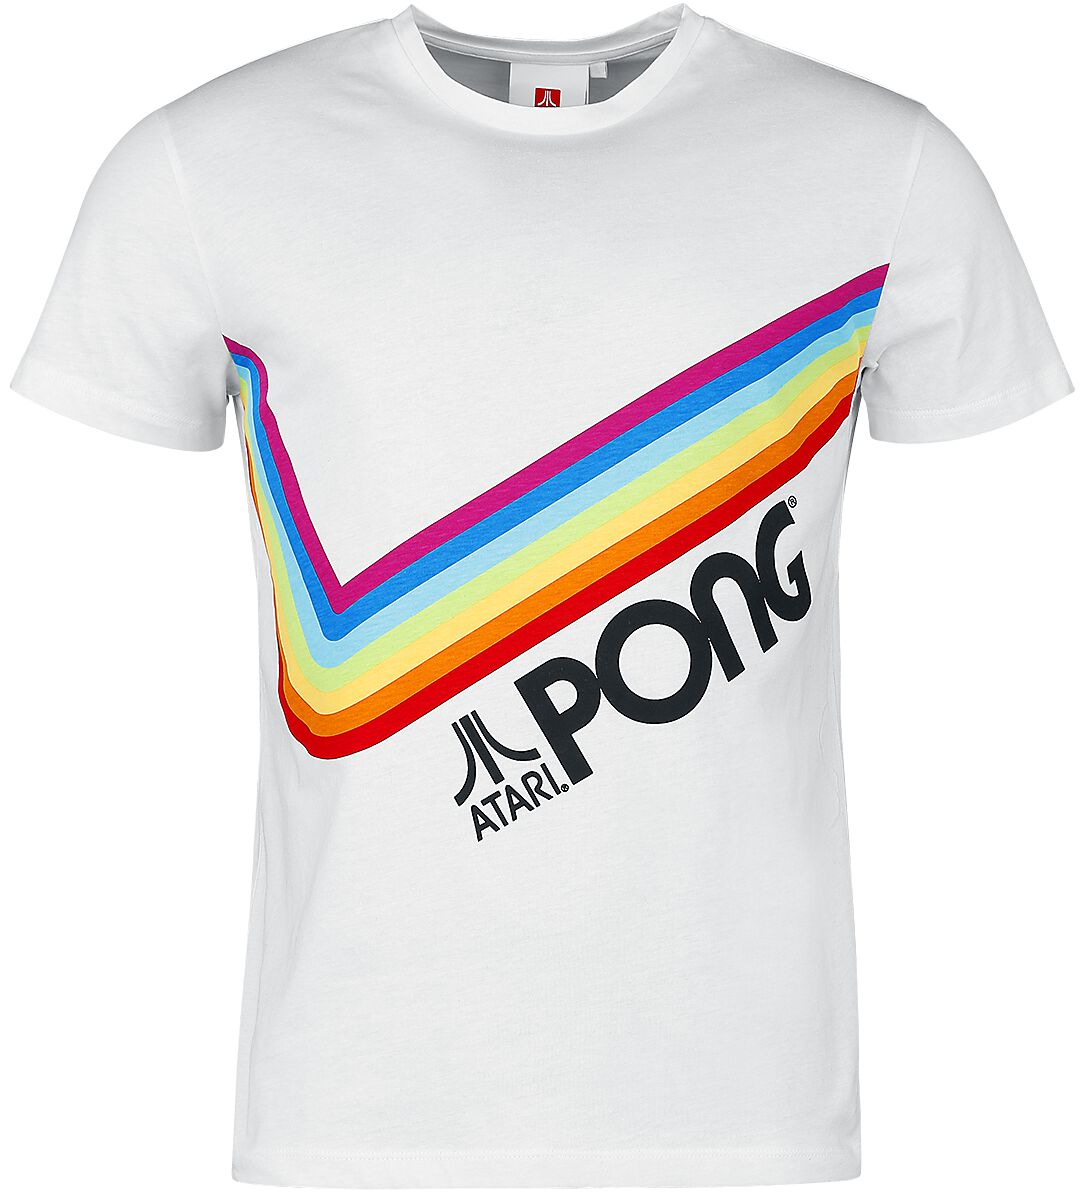 Atari - Gaming T-Shirt - Pong - Pride Rainbow - S bis 3XL - für Männer - Größe 3XL - weiß  - EMP exklusives Merchandise!